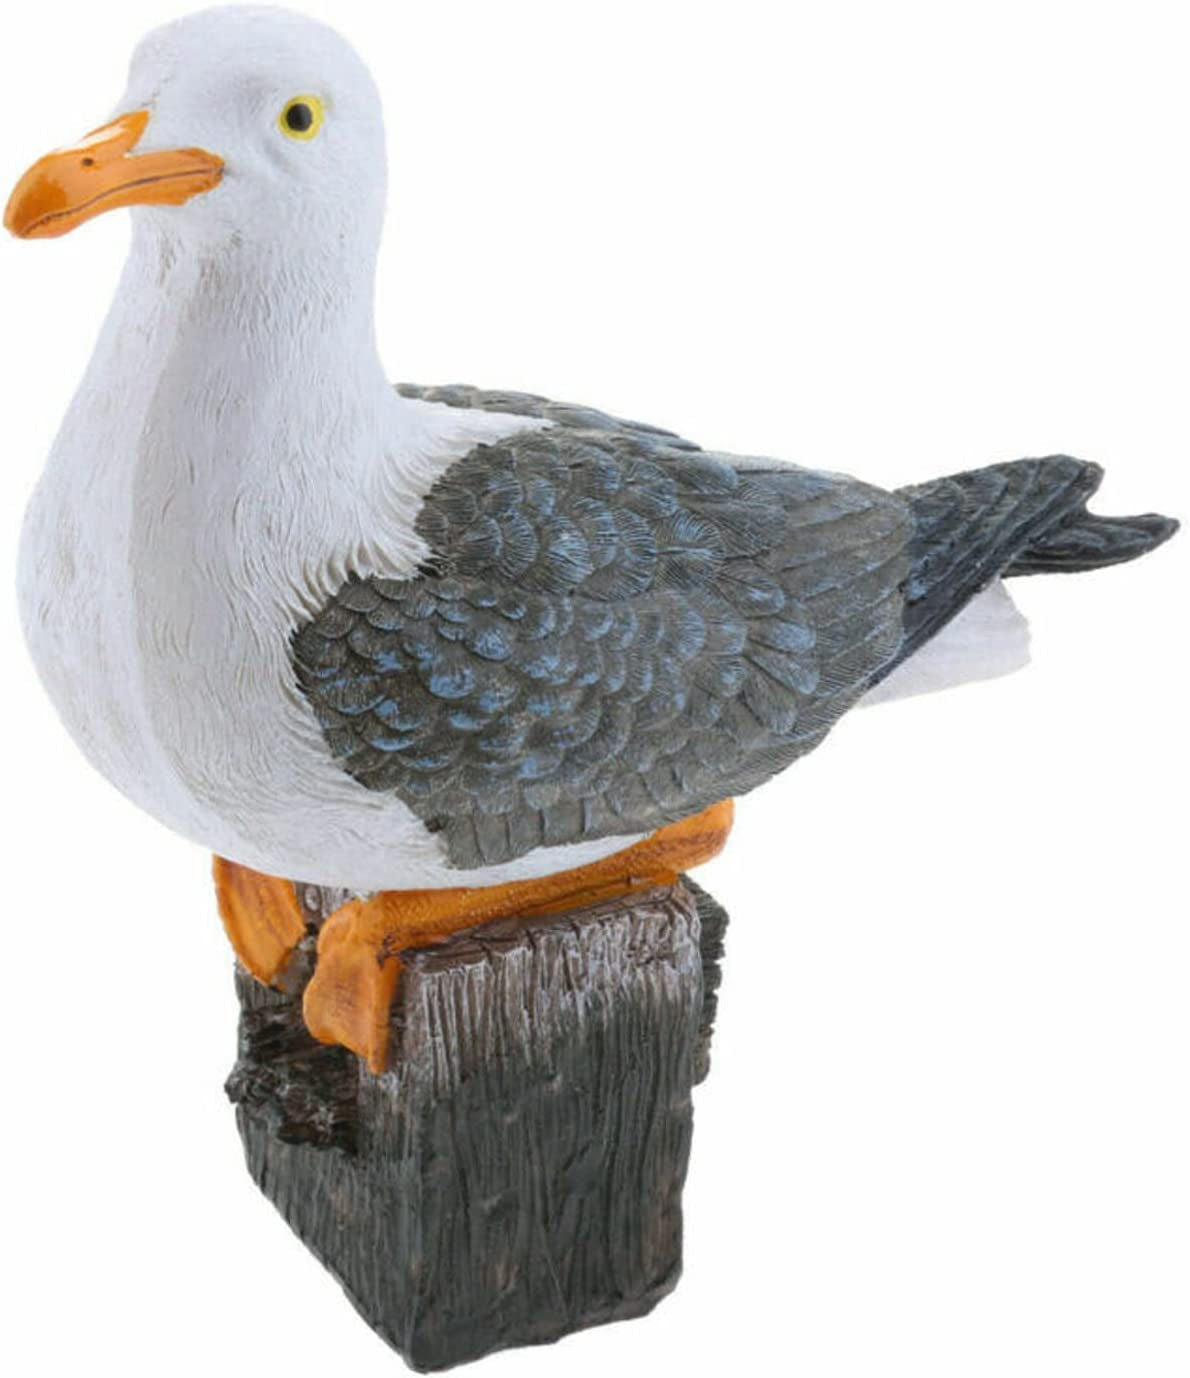 lehom, Lehom Seagull Resin Statue Bird Sculpture Garden Sculpture Decorative Bird Model Seagull Bird Crafts Seagull Ornaments